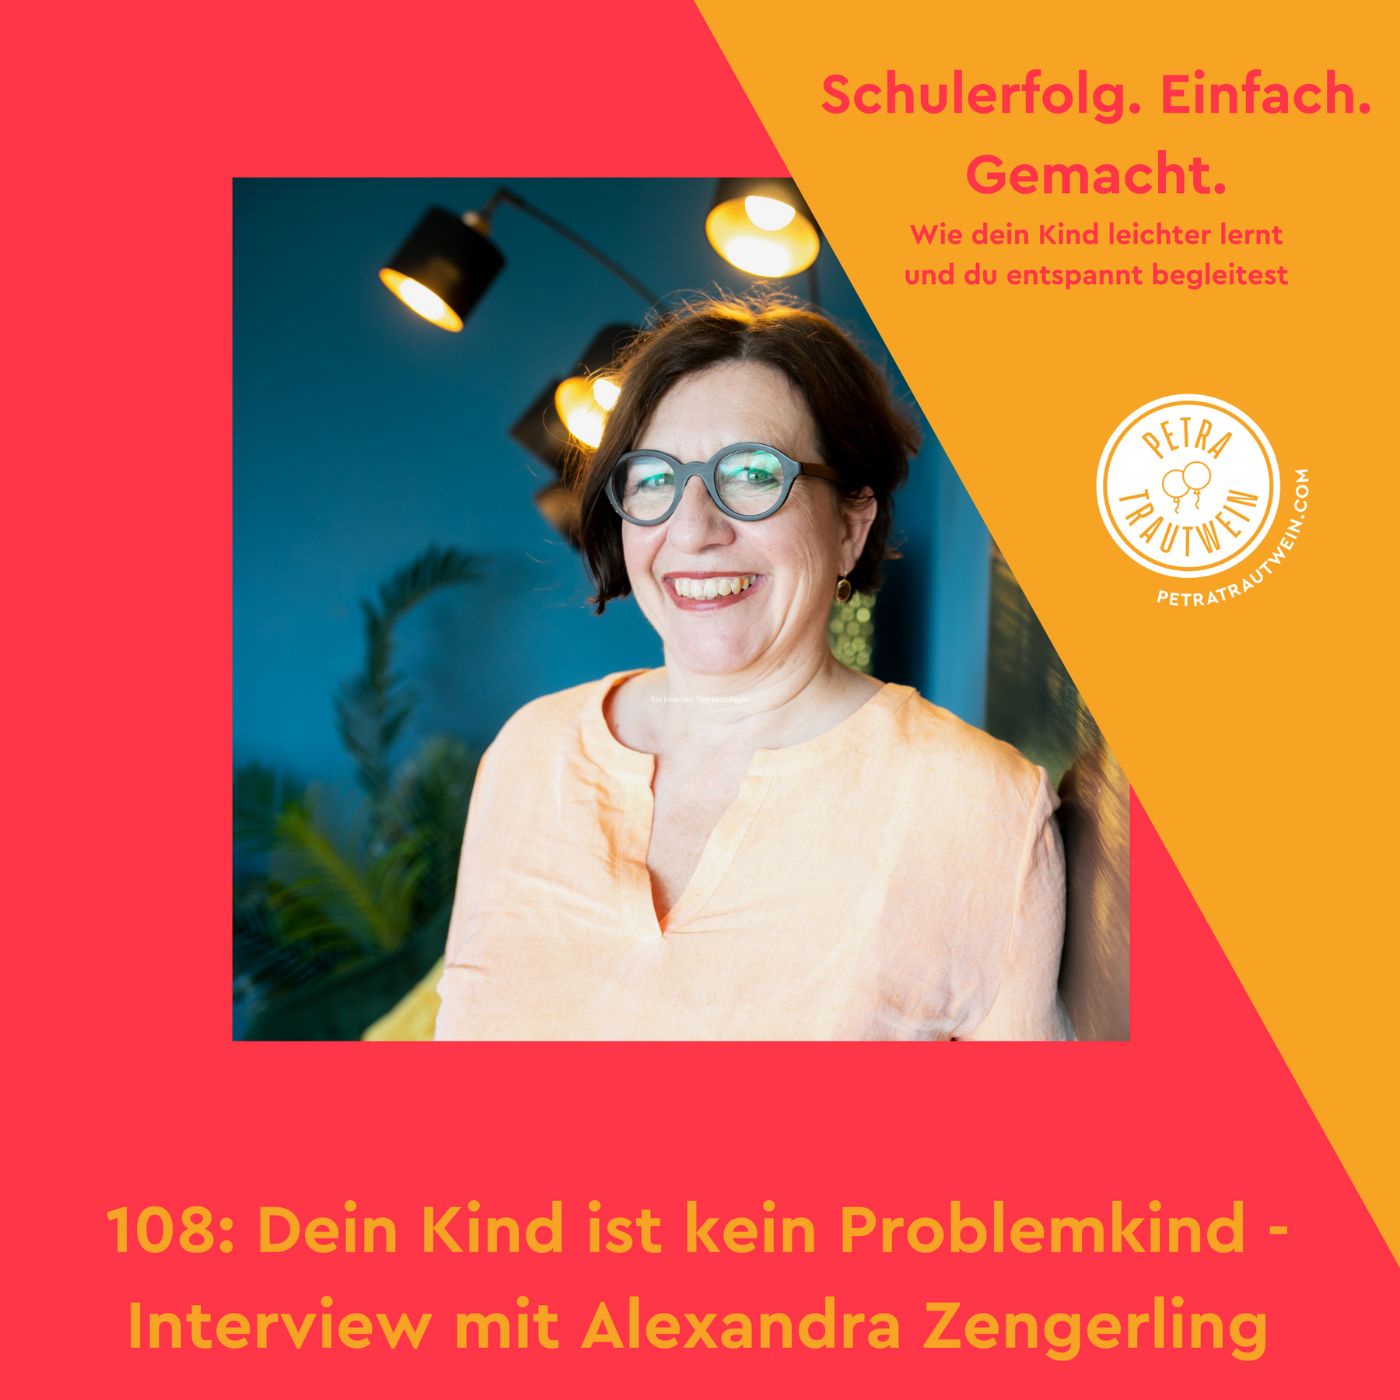 Dein Kind ist kein Problemkind - Interview mit Alexandra Zengerling